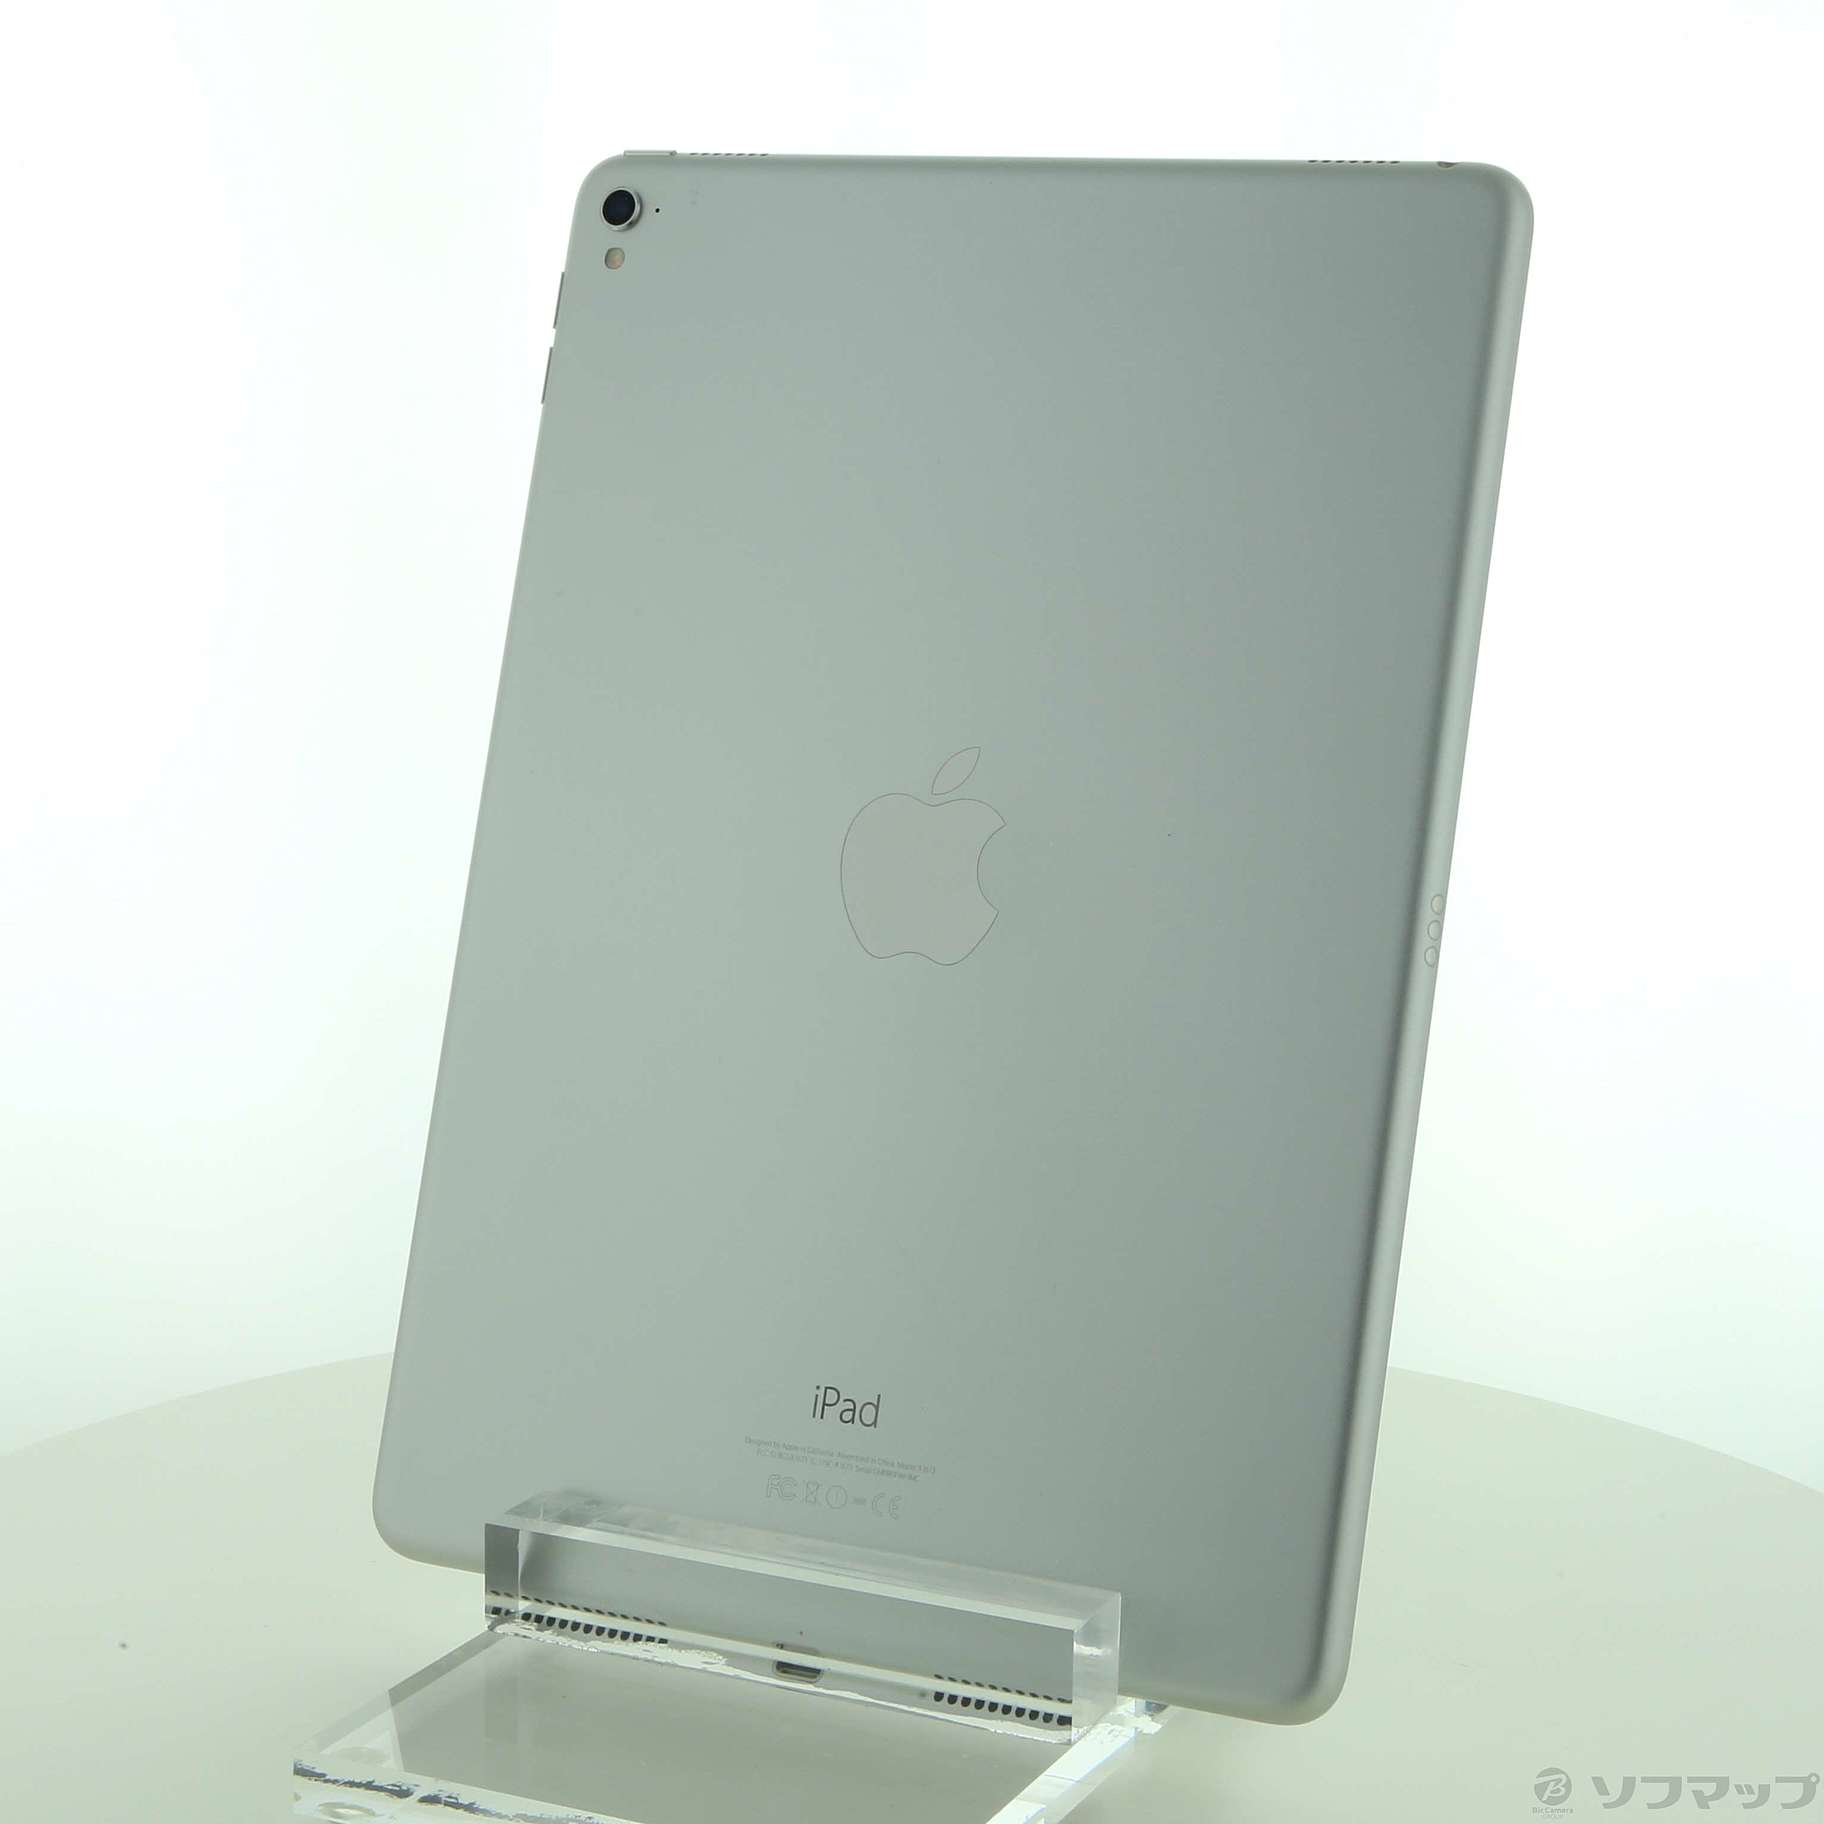 売れ筋 【中古】MLMP2J/A シルバー iPad Pro 9.7インチ Wi-Fi 32GB 